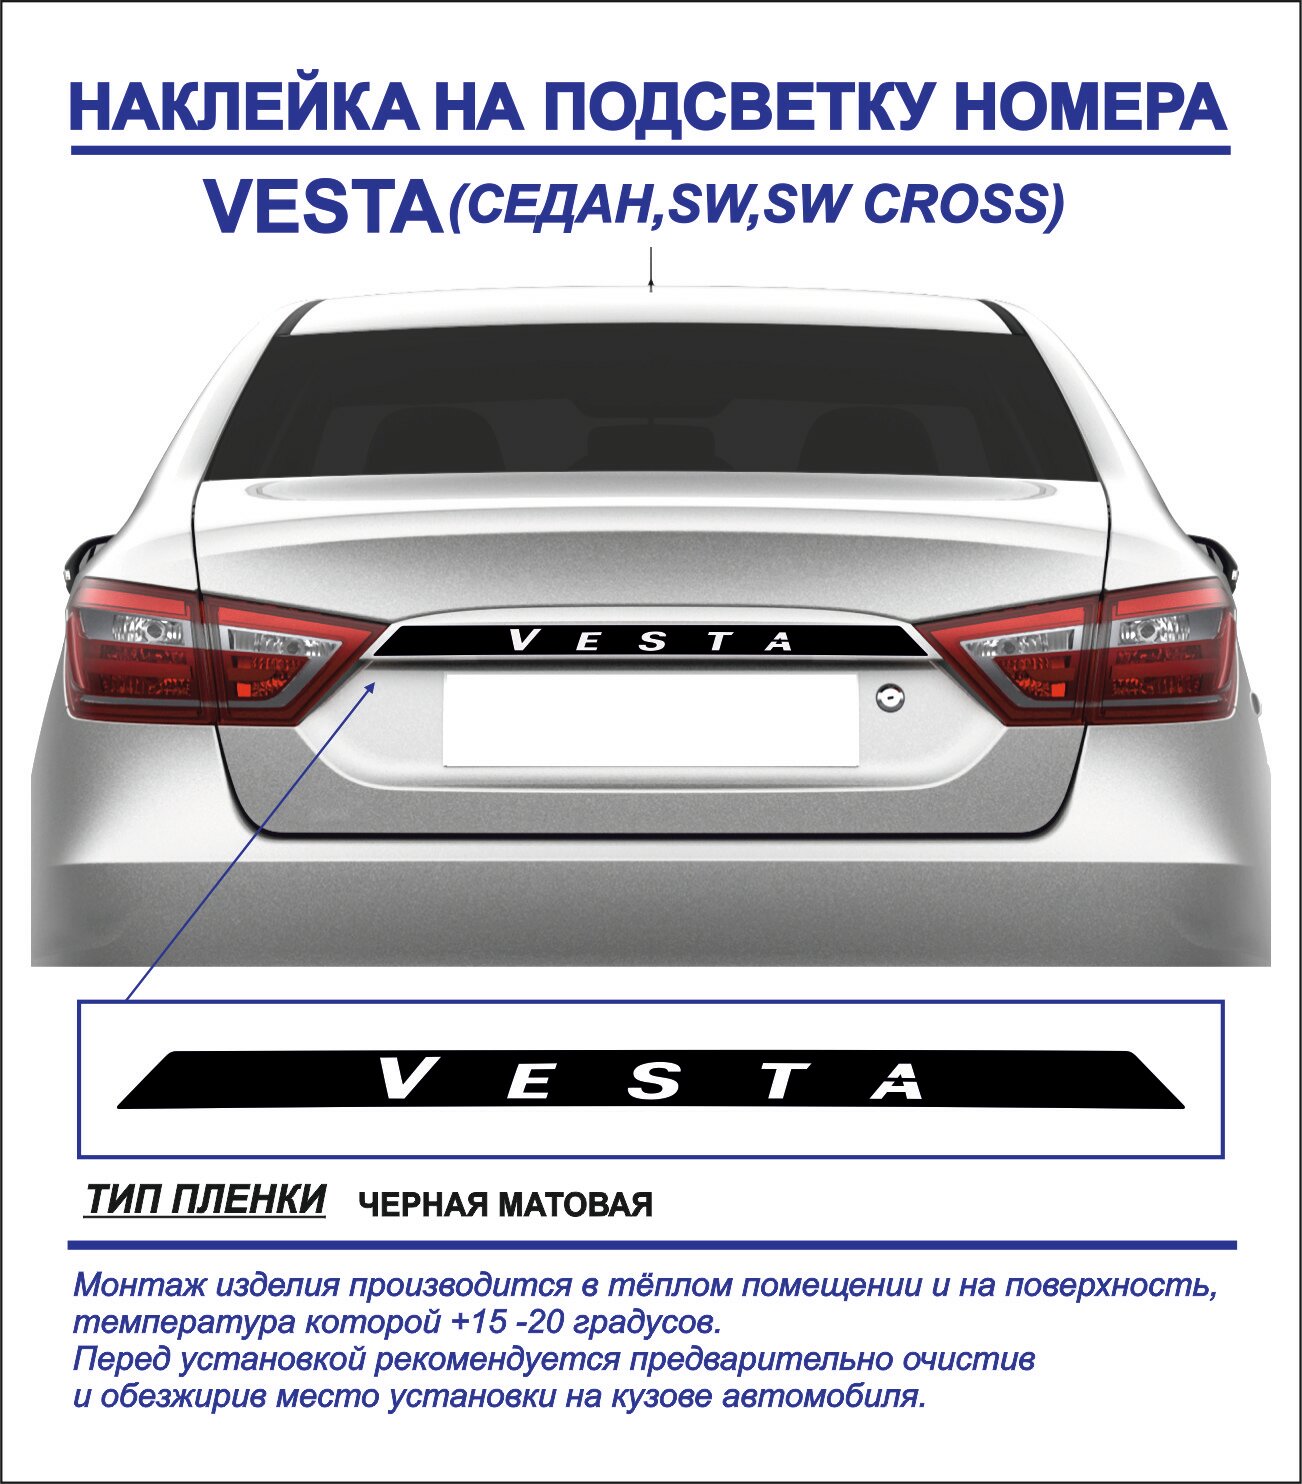 Наклейка, тюнинг на подсветку номера Lada Vesta седан, sw, sw cross (черная, матовая) 1шт.